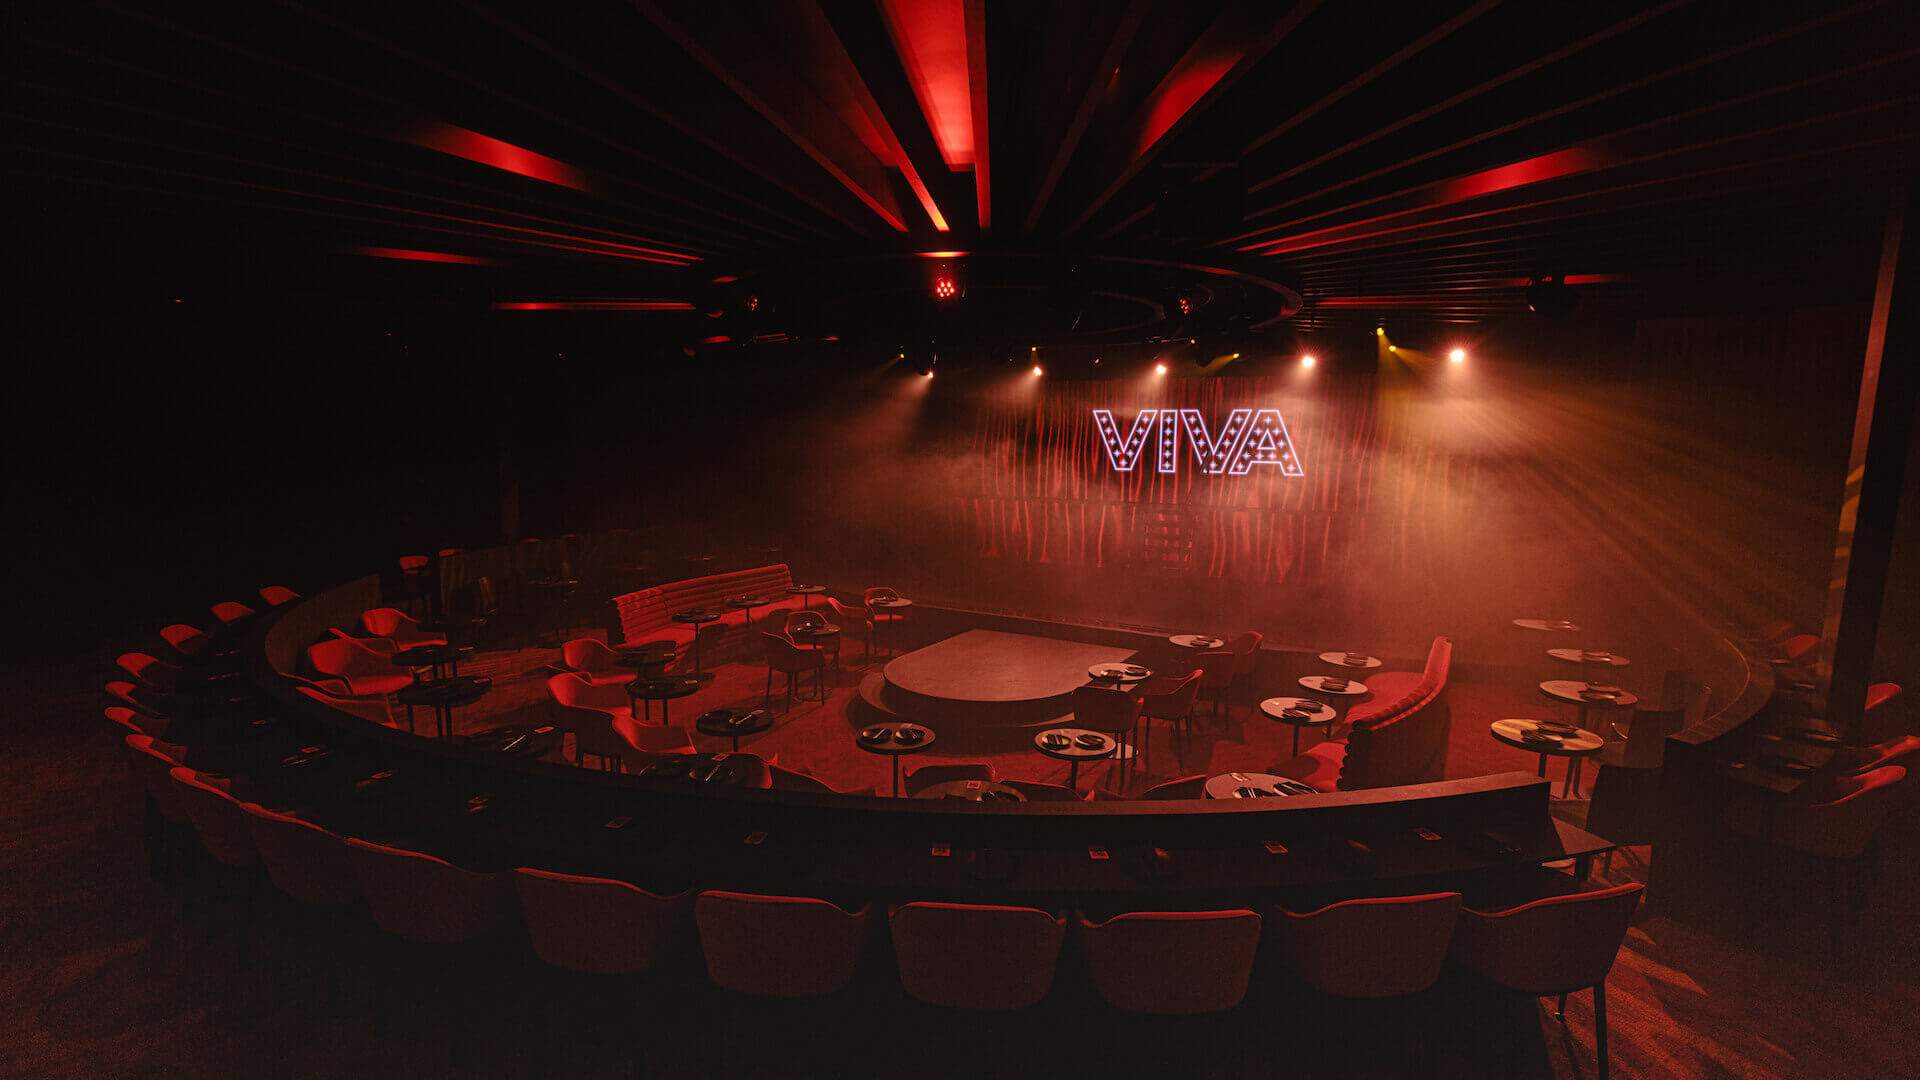 VIVA cabaret club in North Melbourne